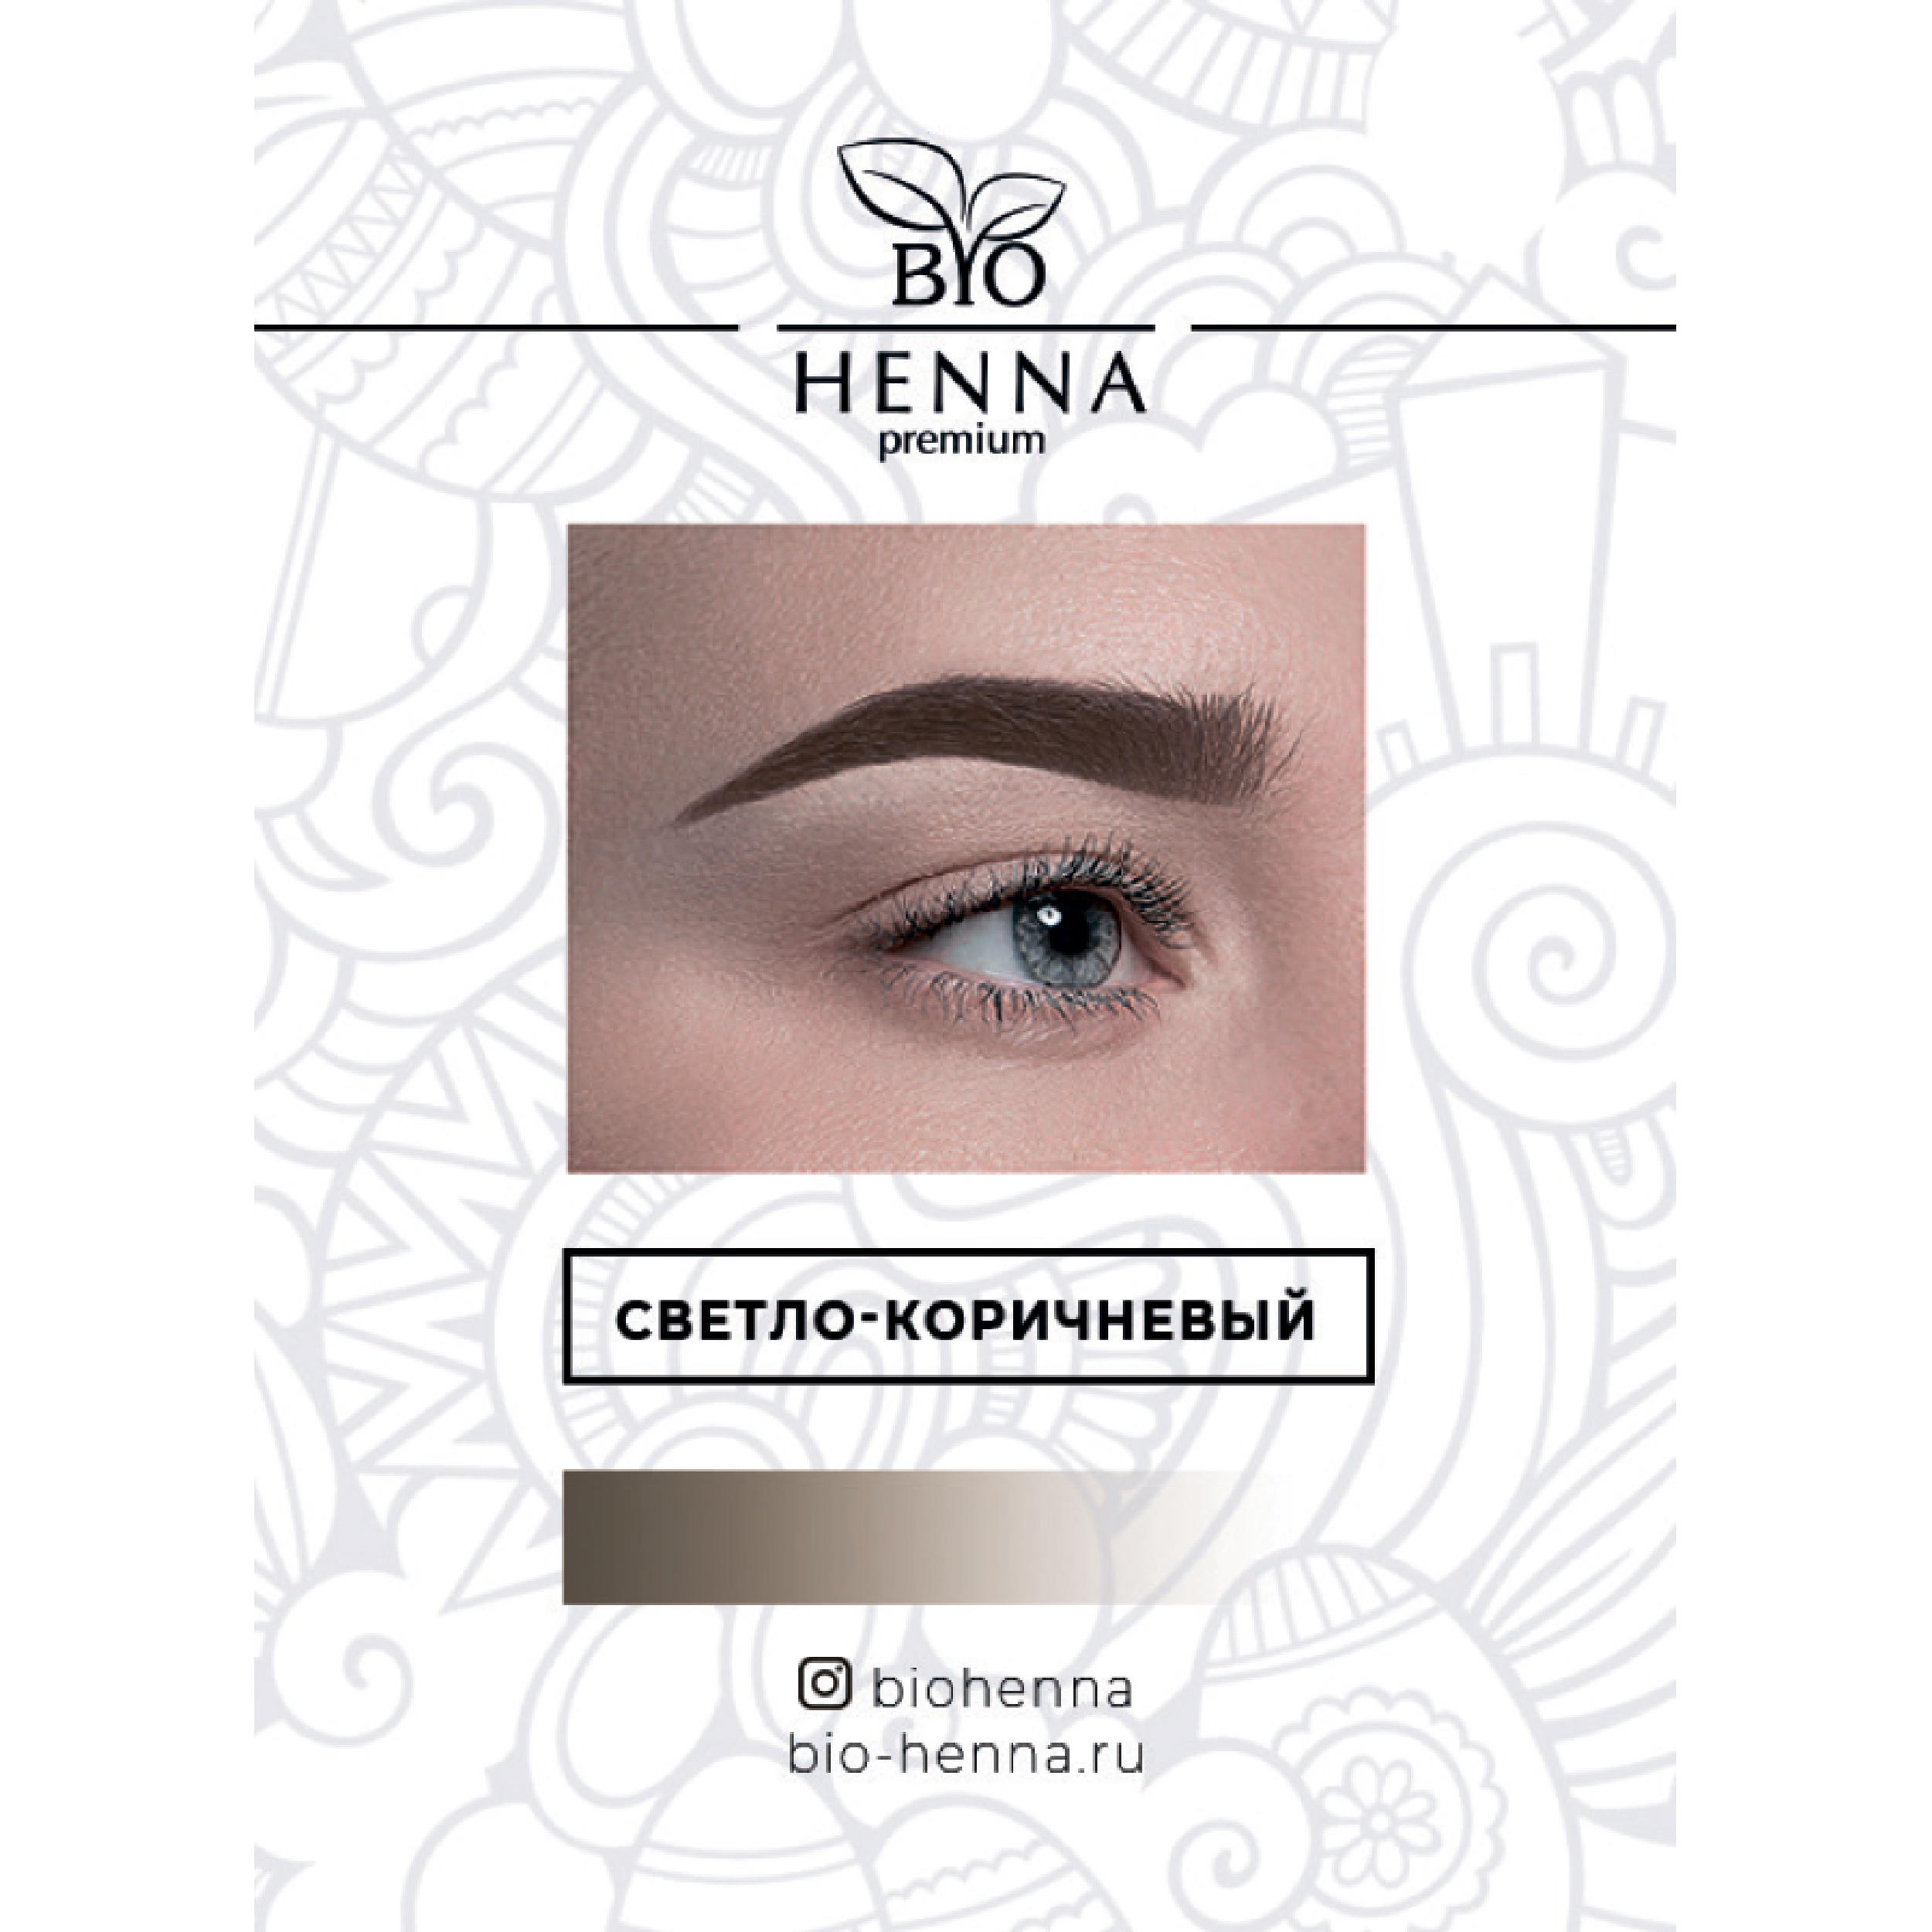 Хна Bio Henna в капсулах оттенок Светло-коричневый, 1 шт, 0,2 гр